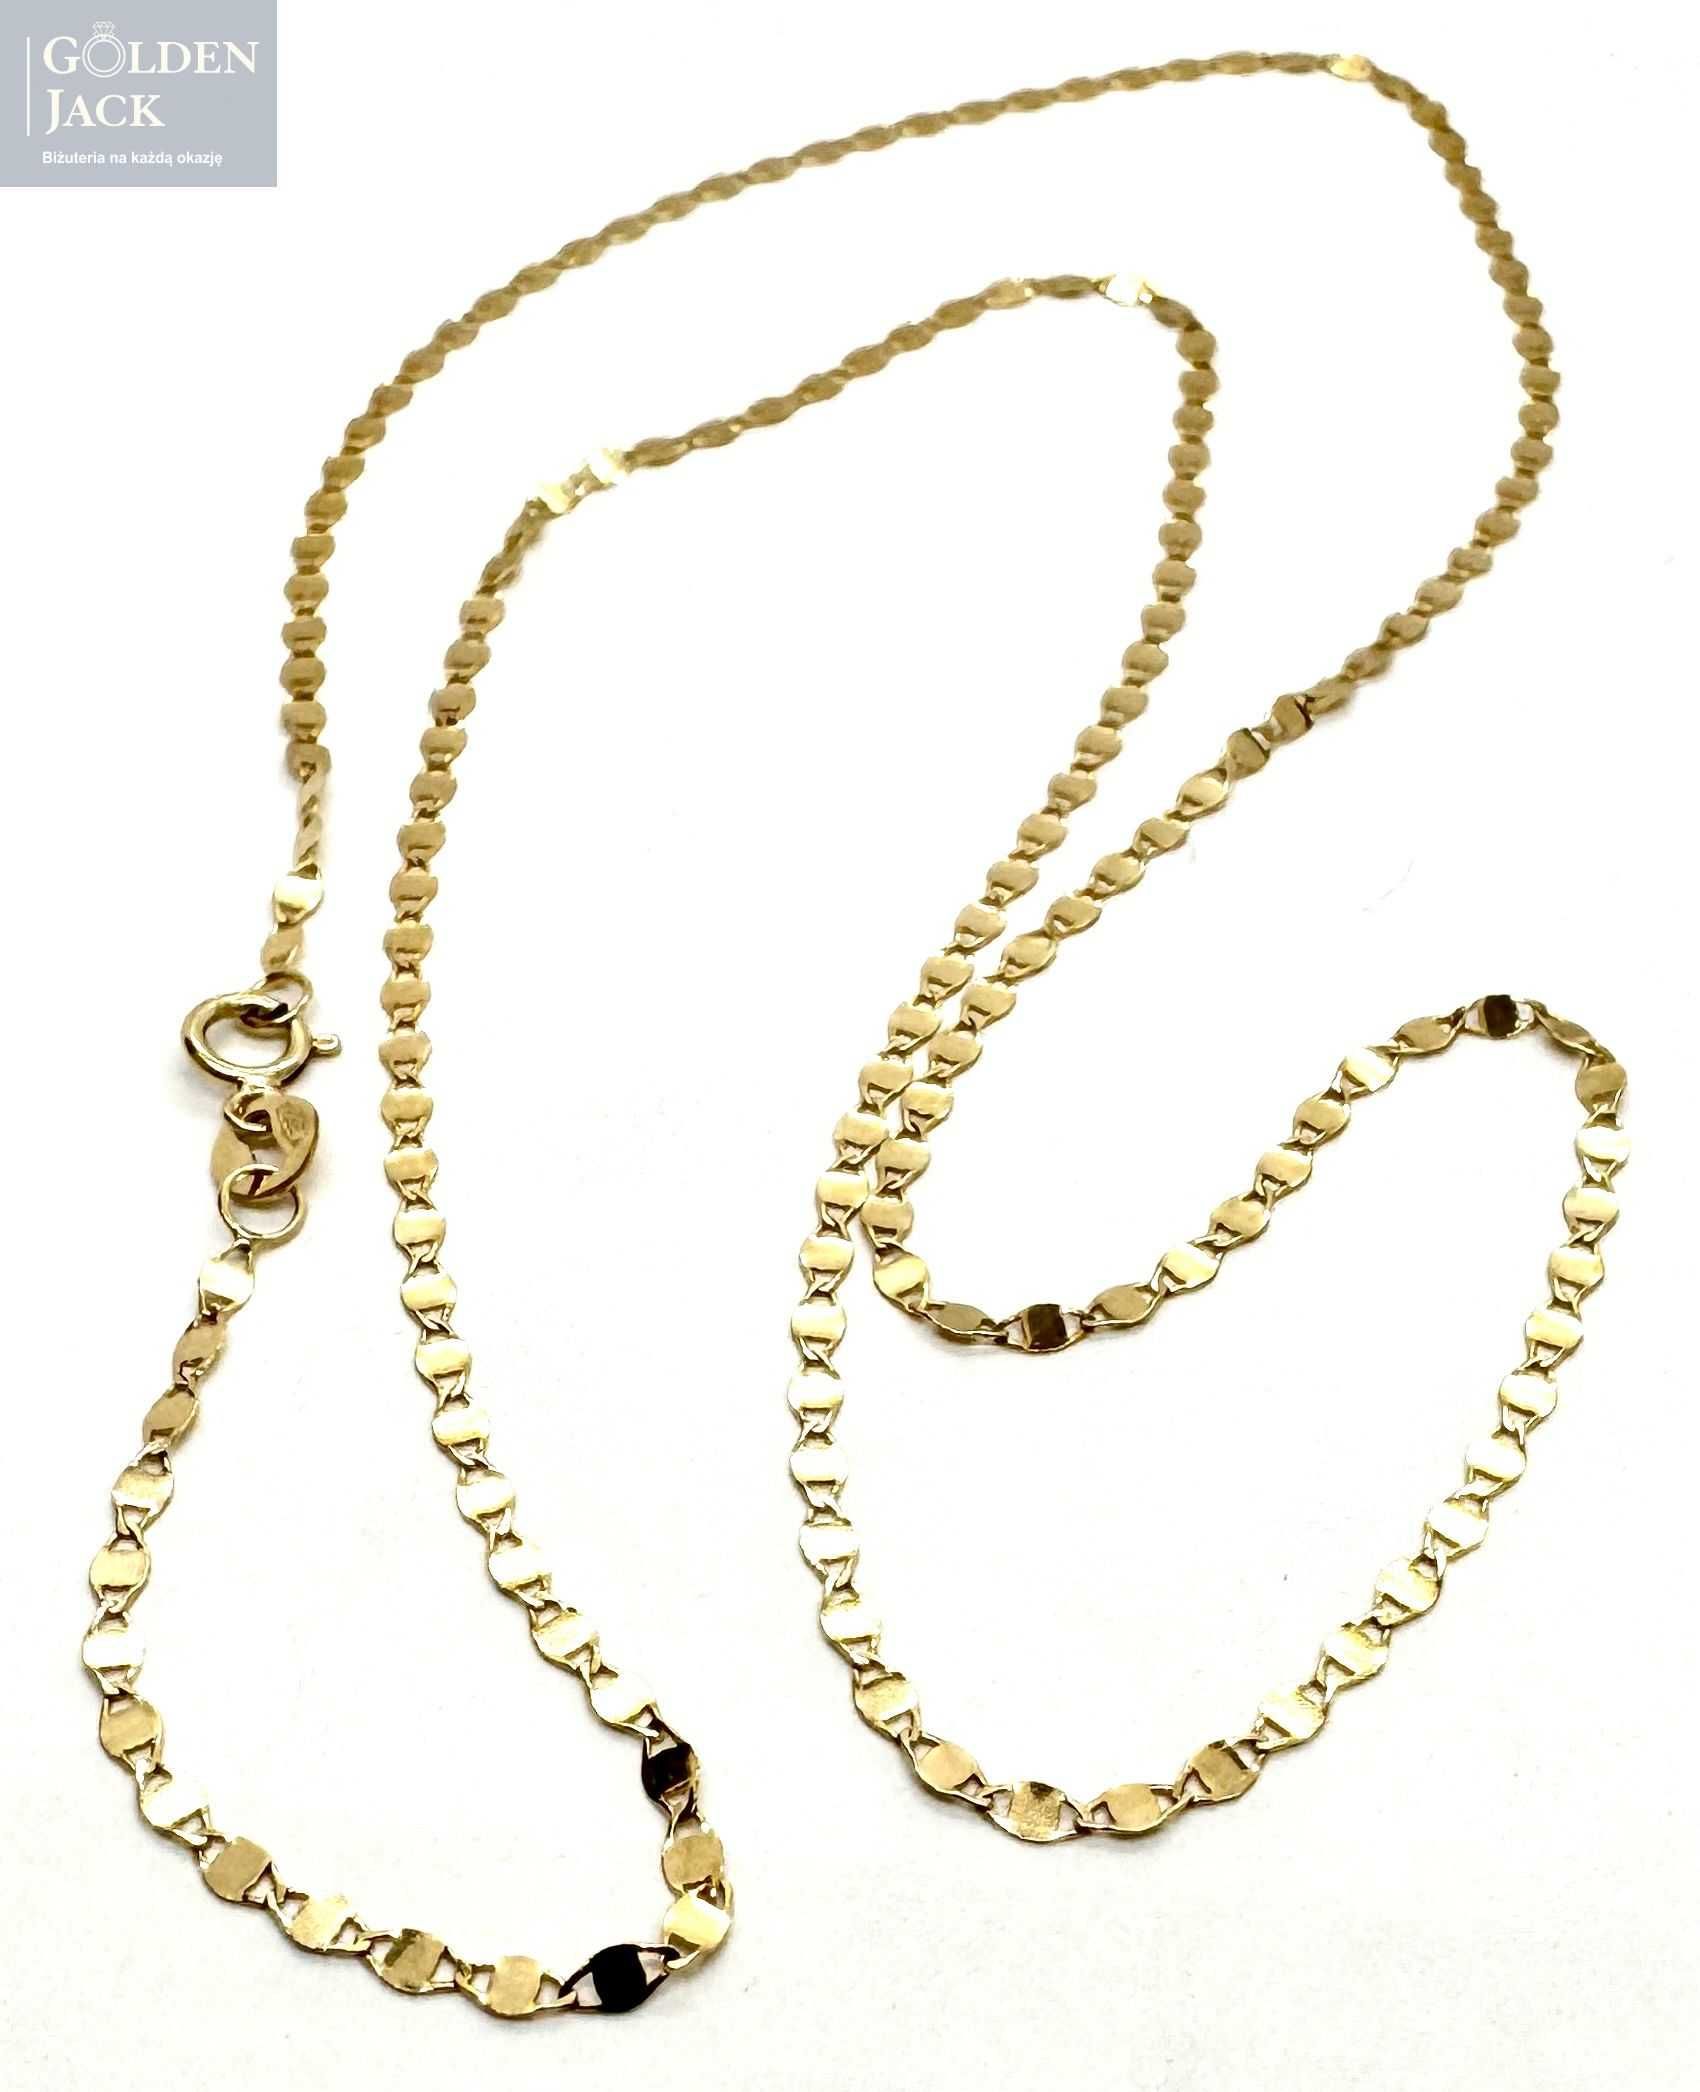 Złoty łańcuszek blaszkowy splot złoto pr. 585 długość 55 cm waga 1,63g